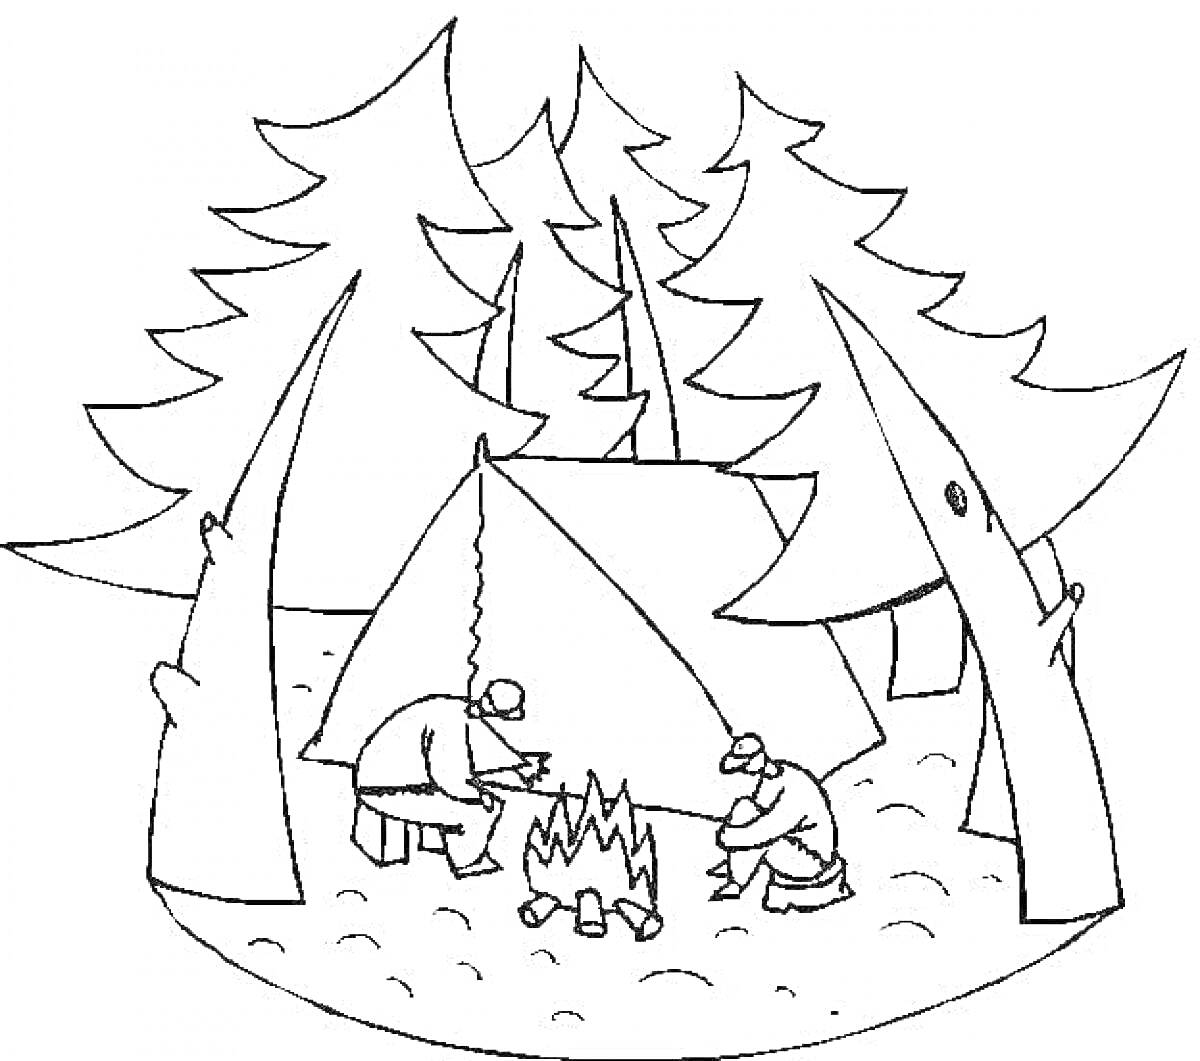 Лагерь в лесу с палаткой, костром и двумя туристами